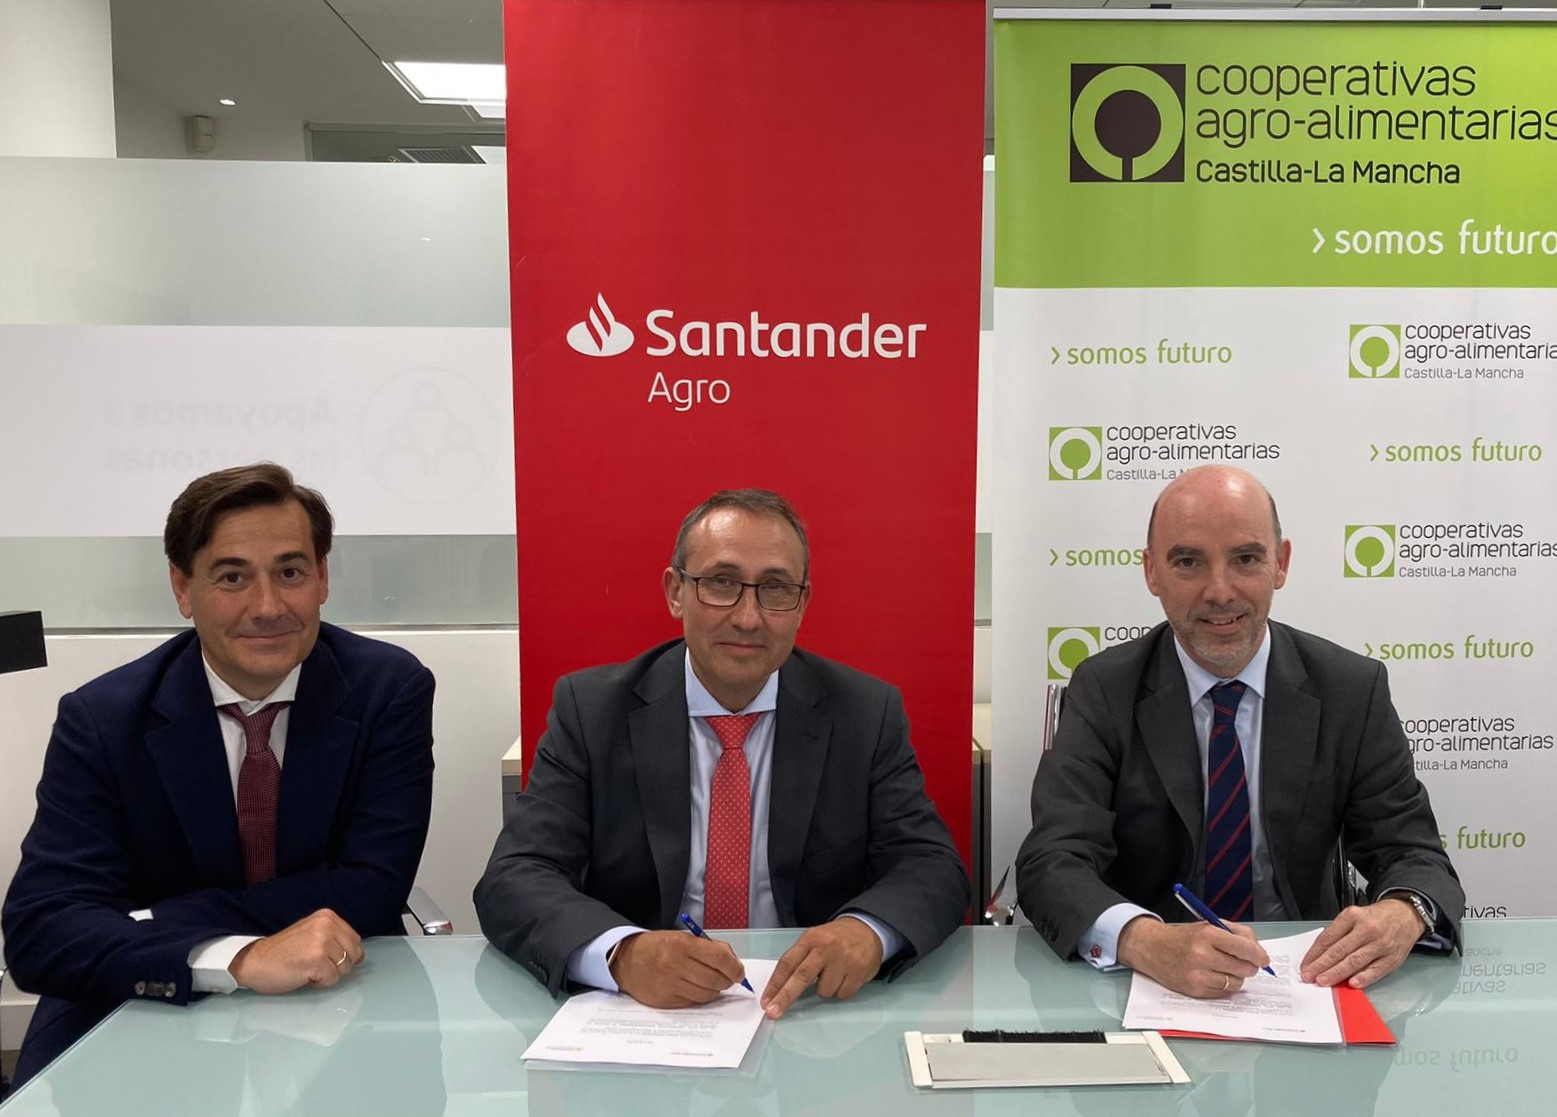 Cooperativas Agro-alimentarias y Banco Santander renuevan su convenio de colaboración para seguir impulsando la competitividad de las cooperativas de Castilla-La Mancha